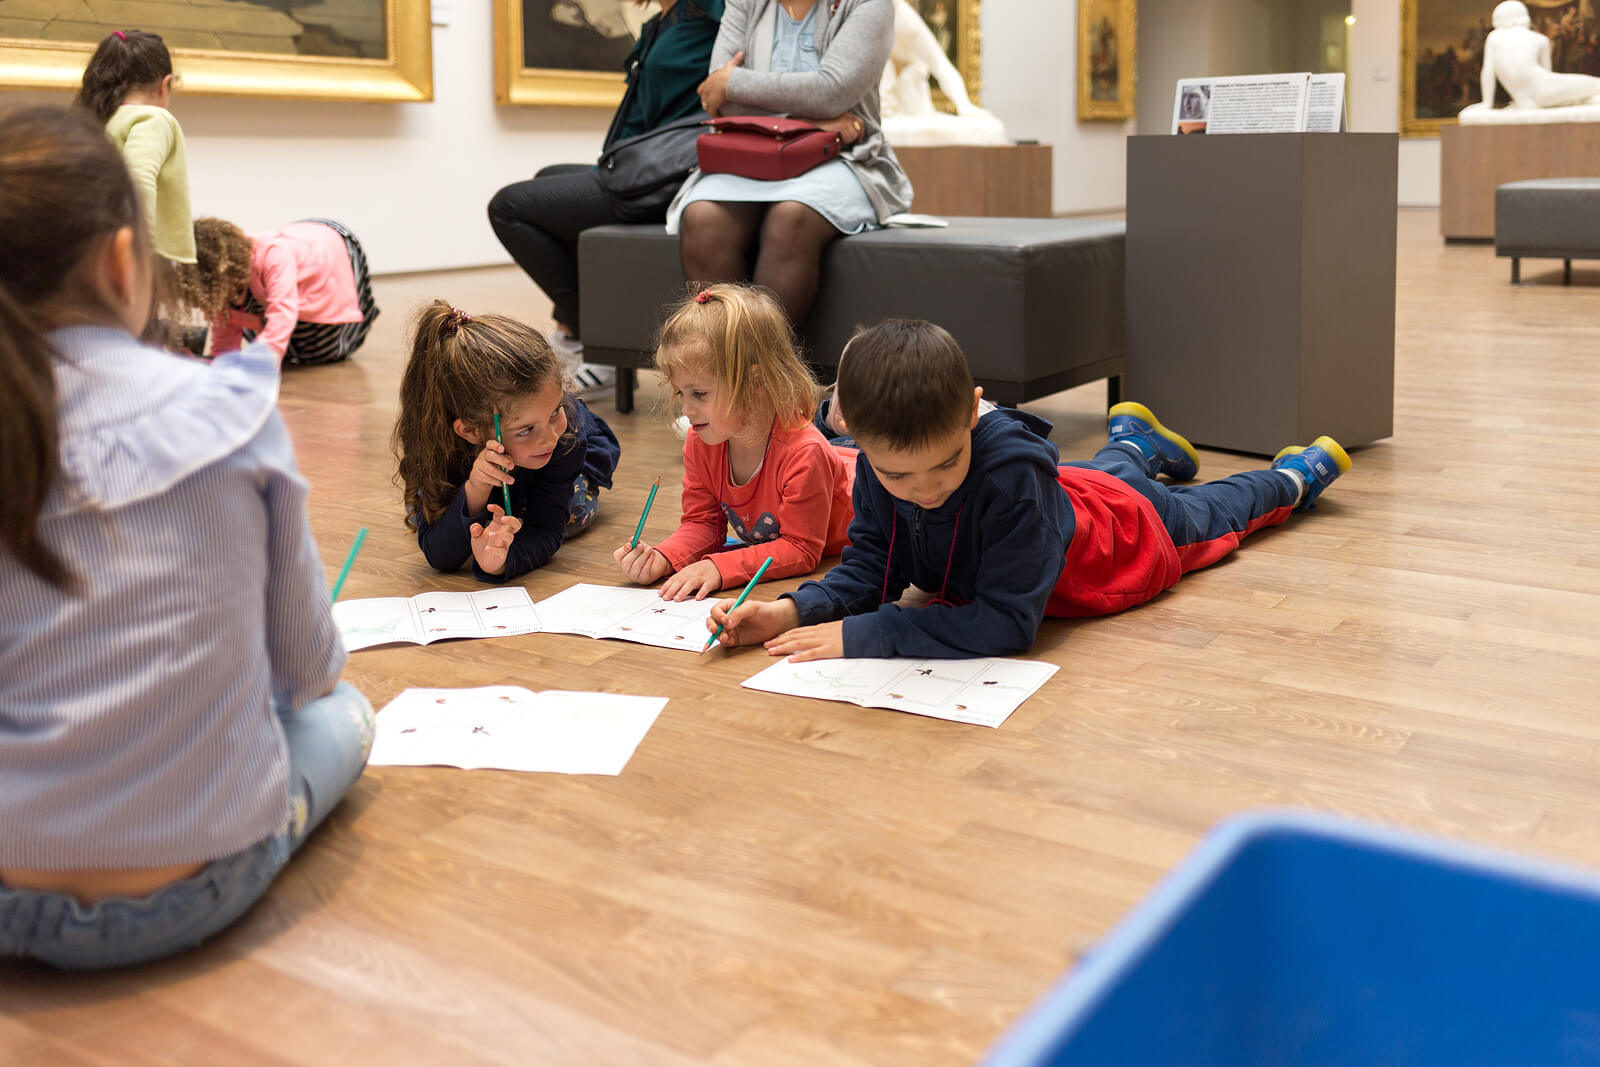 Bambini che studiano in un museo grazie al cross-learning.